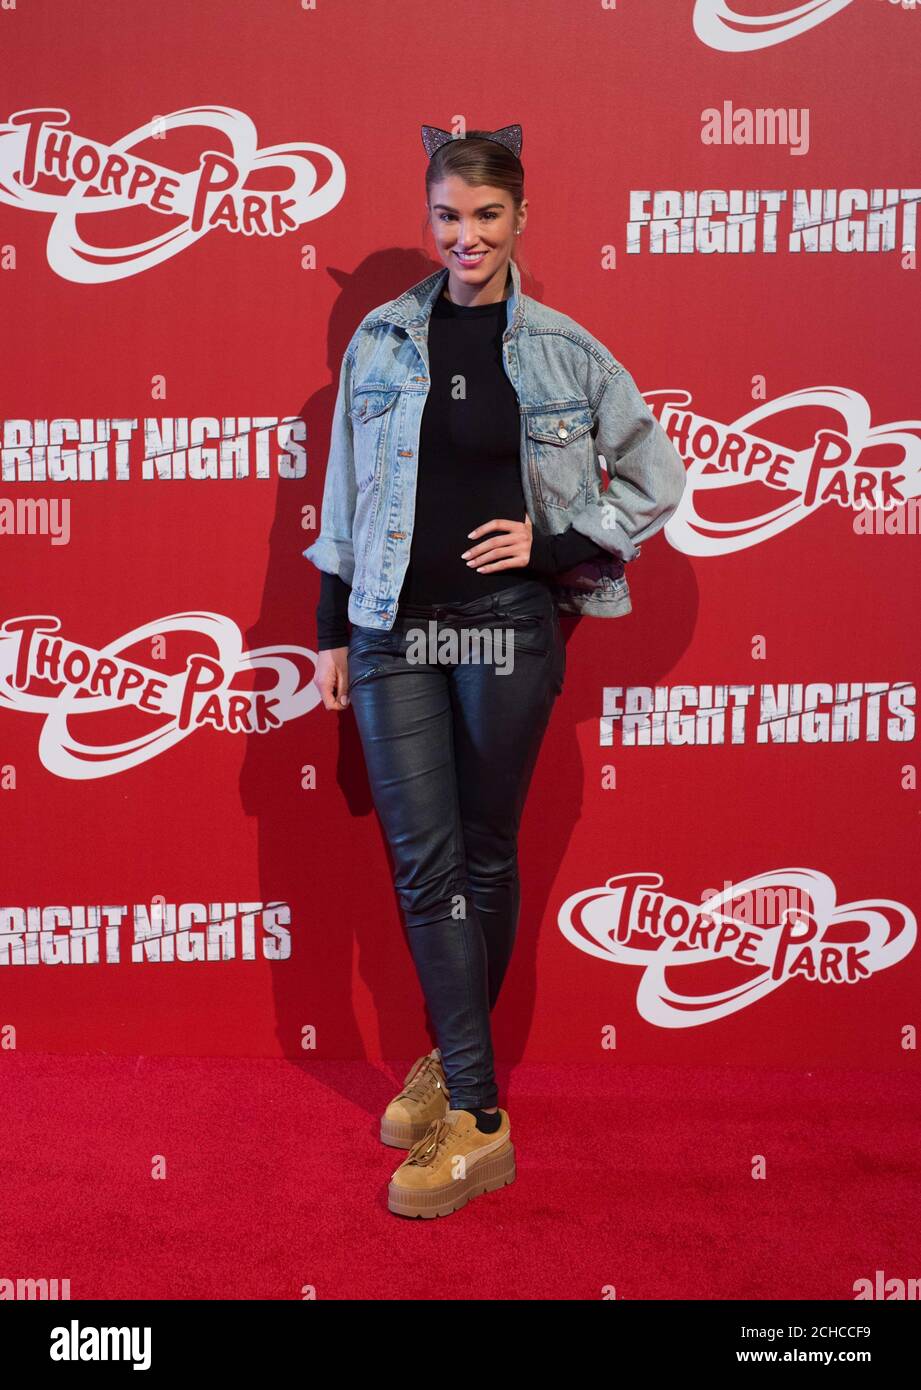 Amy Willerton beim Start der jährlichen Fright Nights-Saison des THORPE PARK Resorts, die zwei neue Live-Action-Labyrinthe bietet, die von der Fernsehsendung The Walking Dead inspiriert wurden. Stockfoto